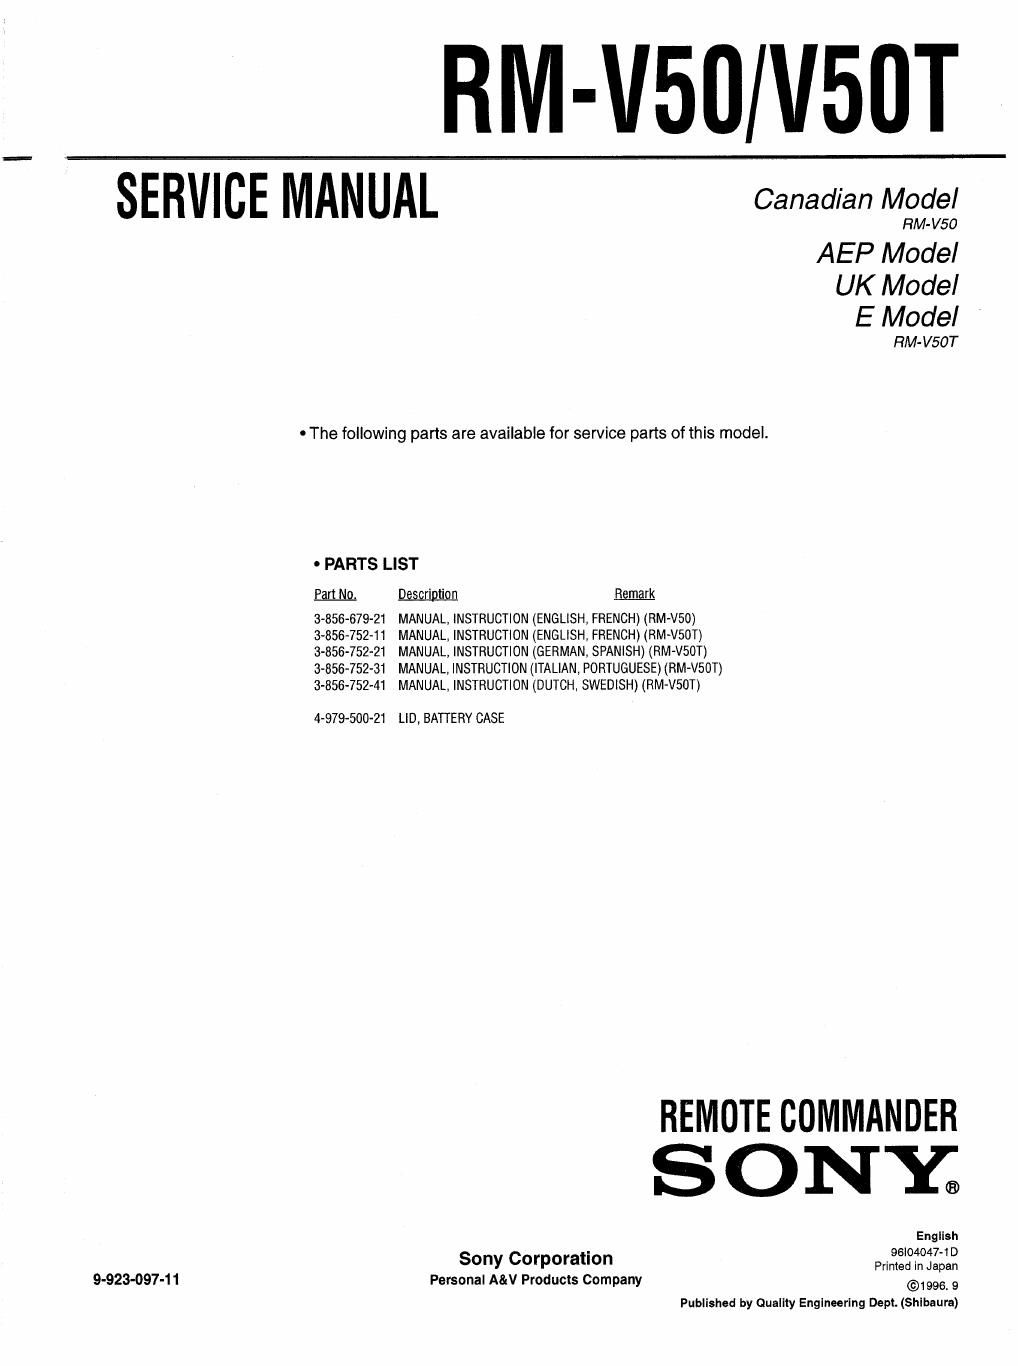 sony rm v 50 service manual